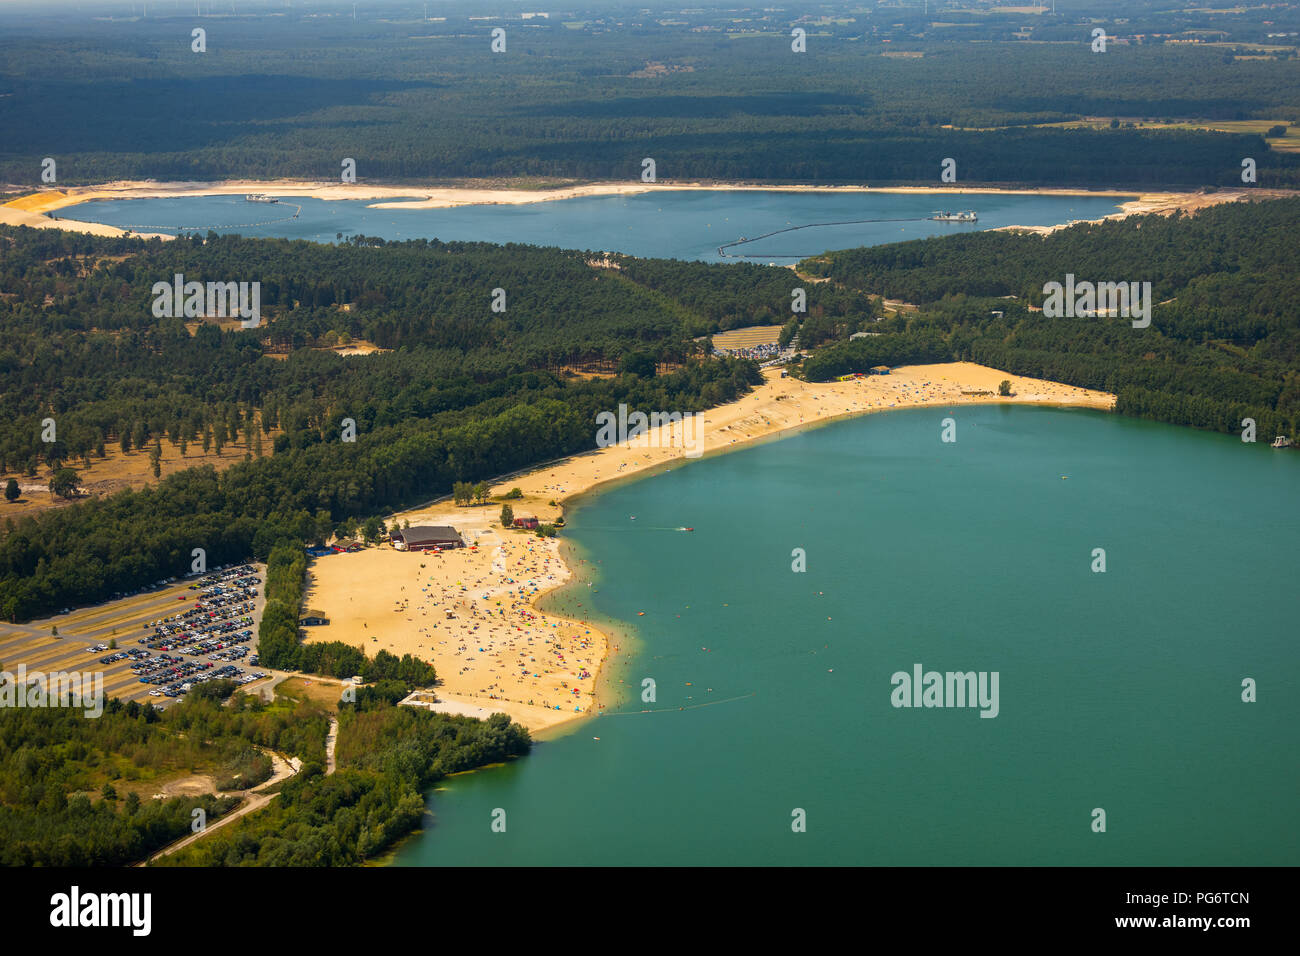 Beliebteste Strand der Ruhrgebiet ist am Silbersee II in Haltern am See entfernt, Sand und Wasser, Karibik Feeling, Lido, türkisfarbenem Wasser, Badegäste, Stockfoto